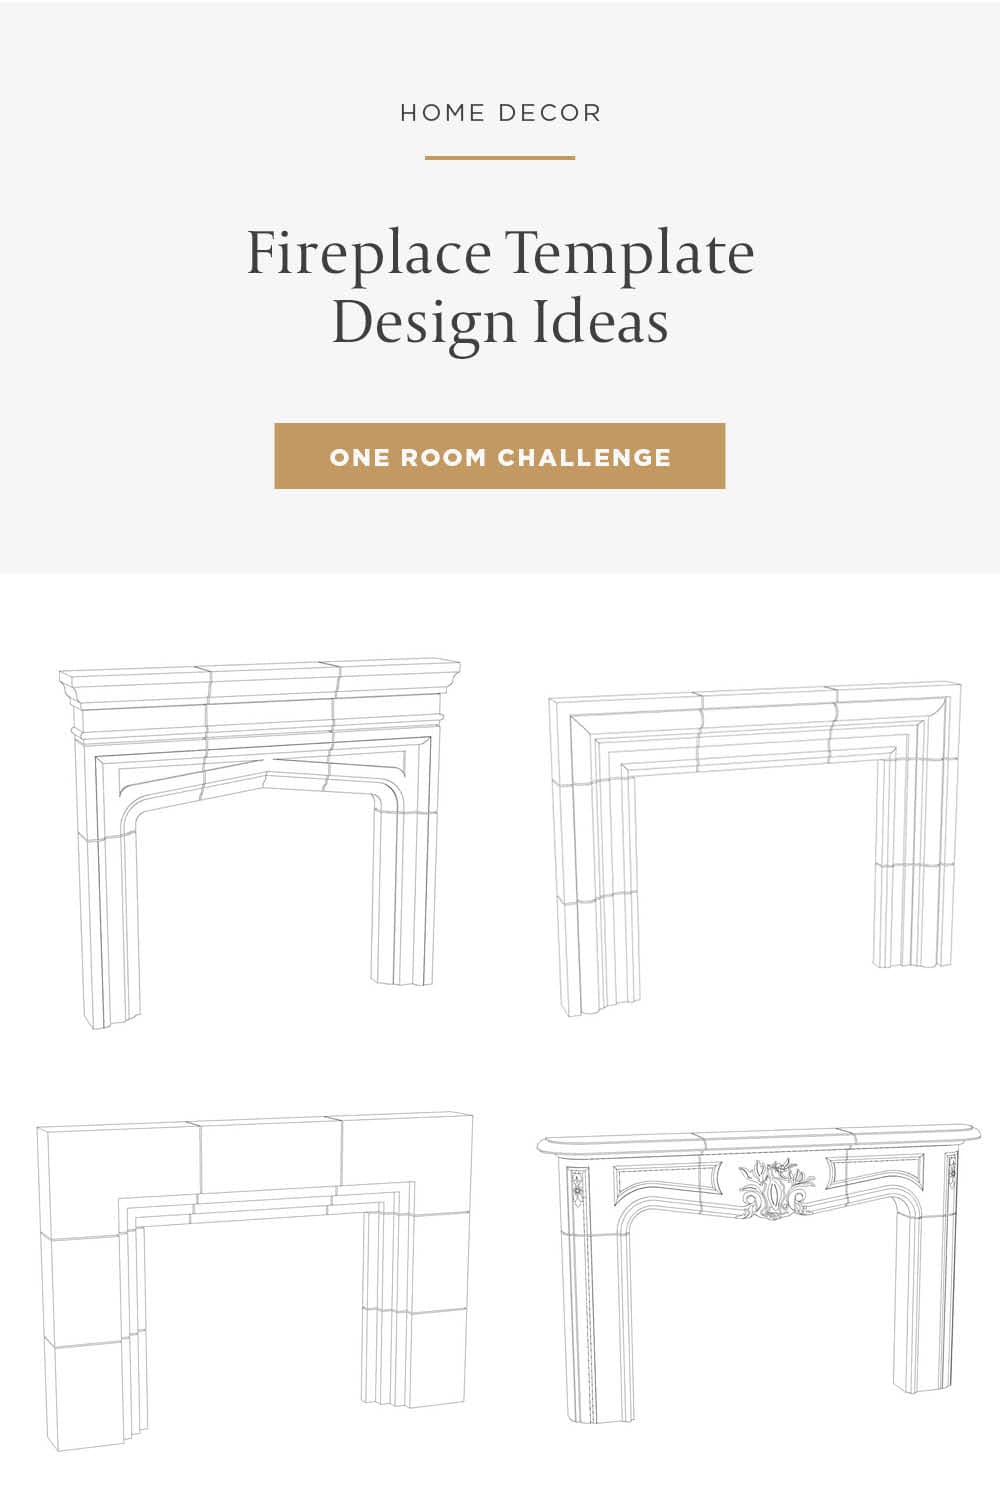 Custom Fireplace Design Ideas